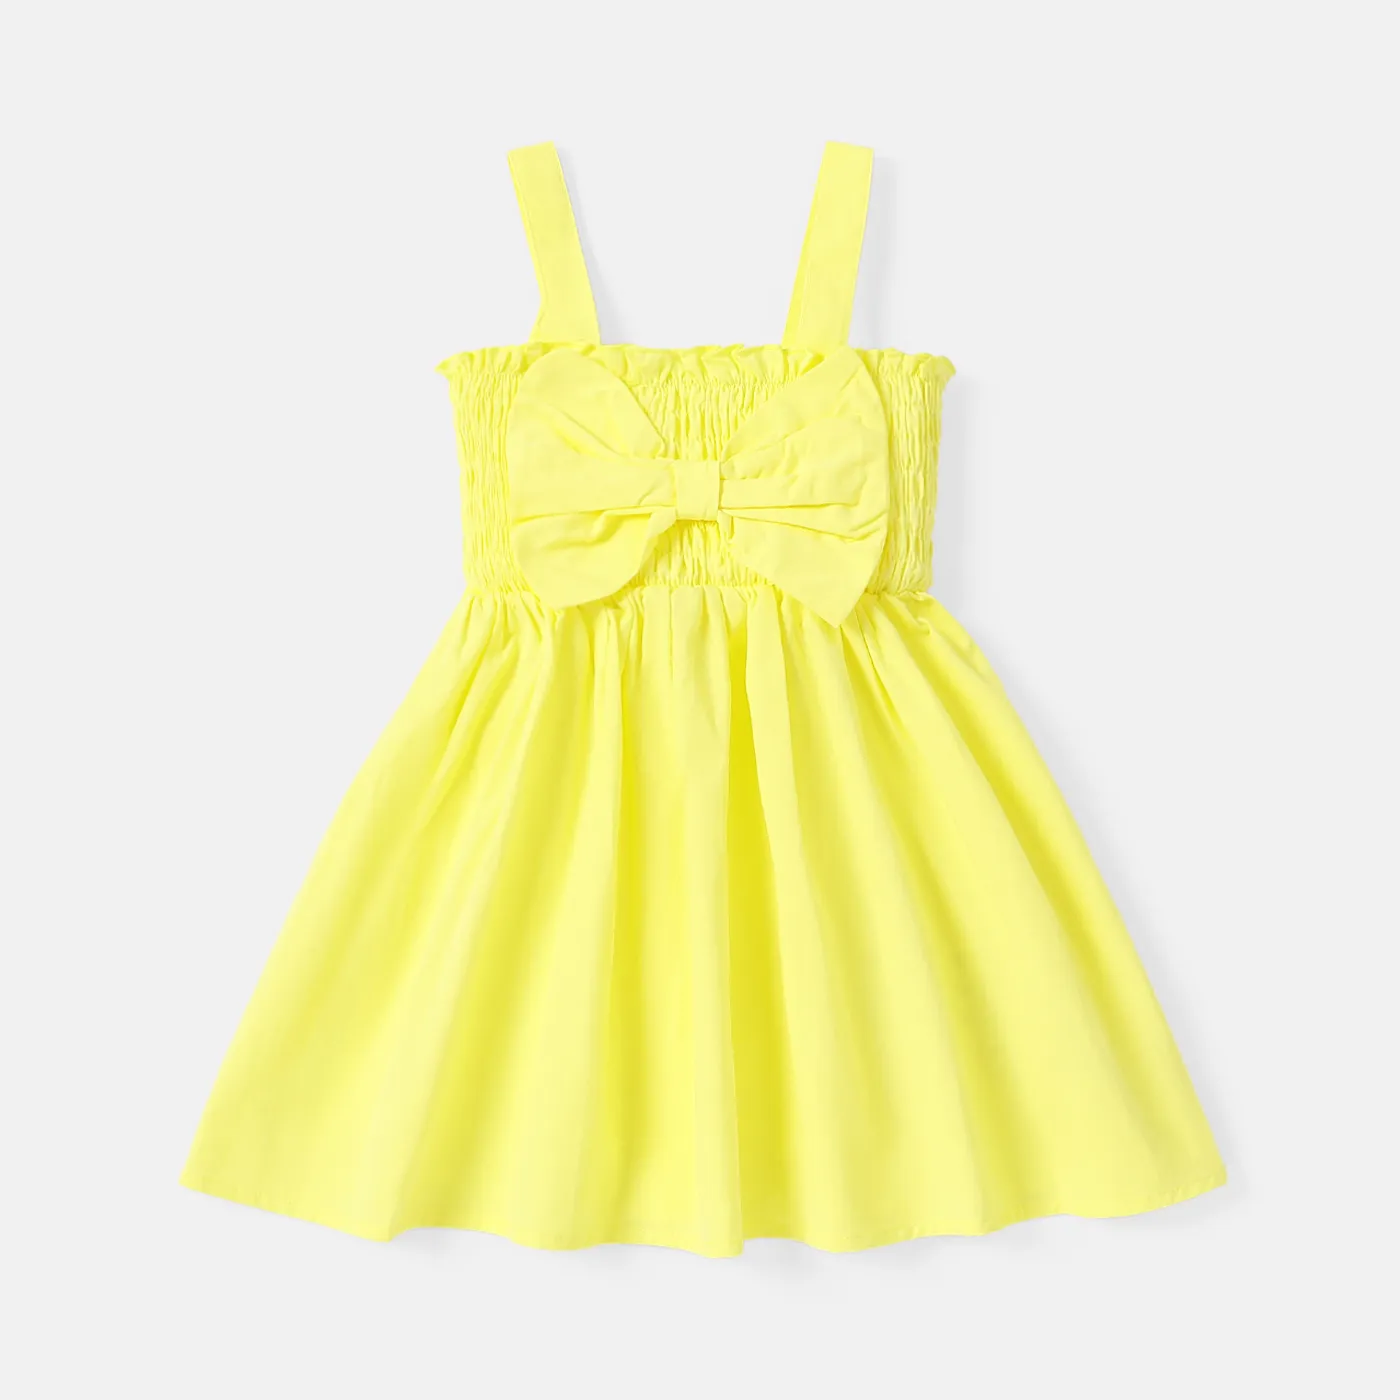 Toddler Girl 100% Cotton Solid Color Bowknot Design Smocked Slip Dress